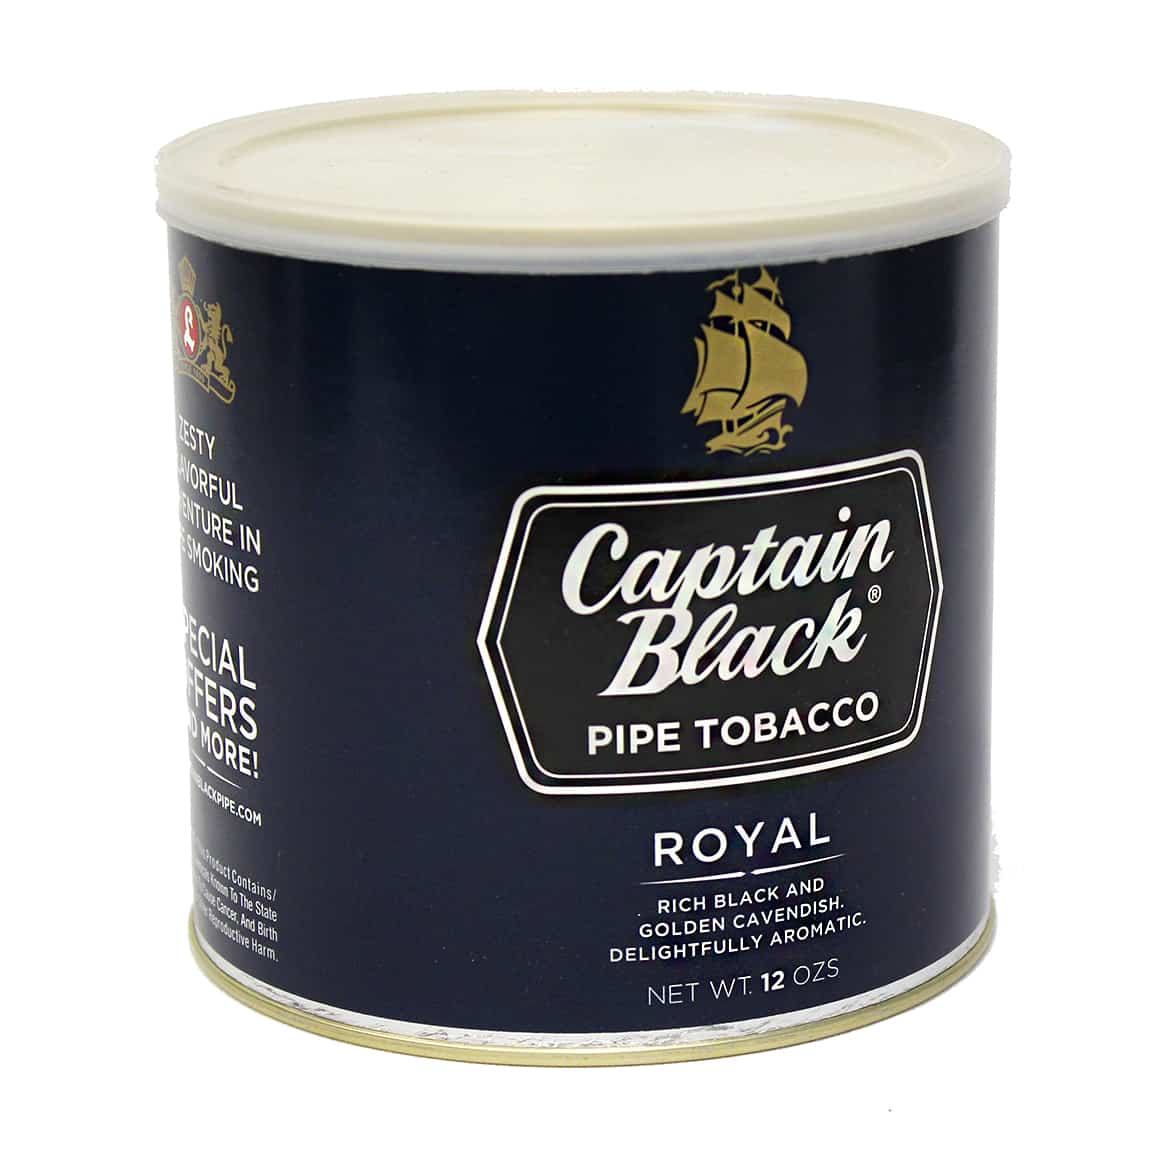 Captain Black Royal Pipe Tobacco